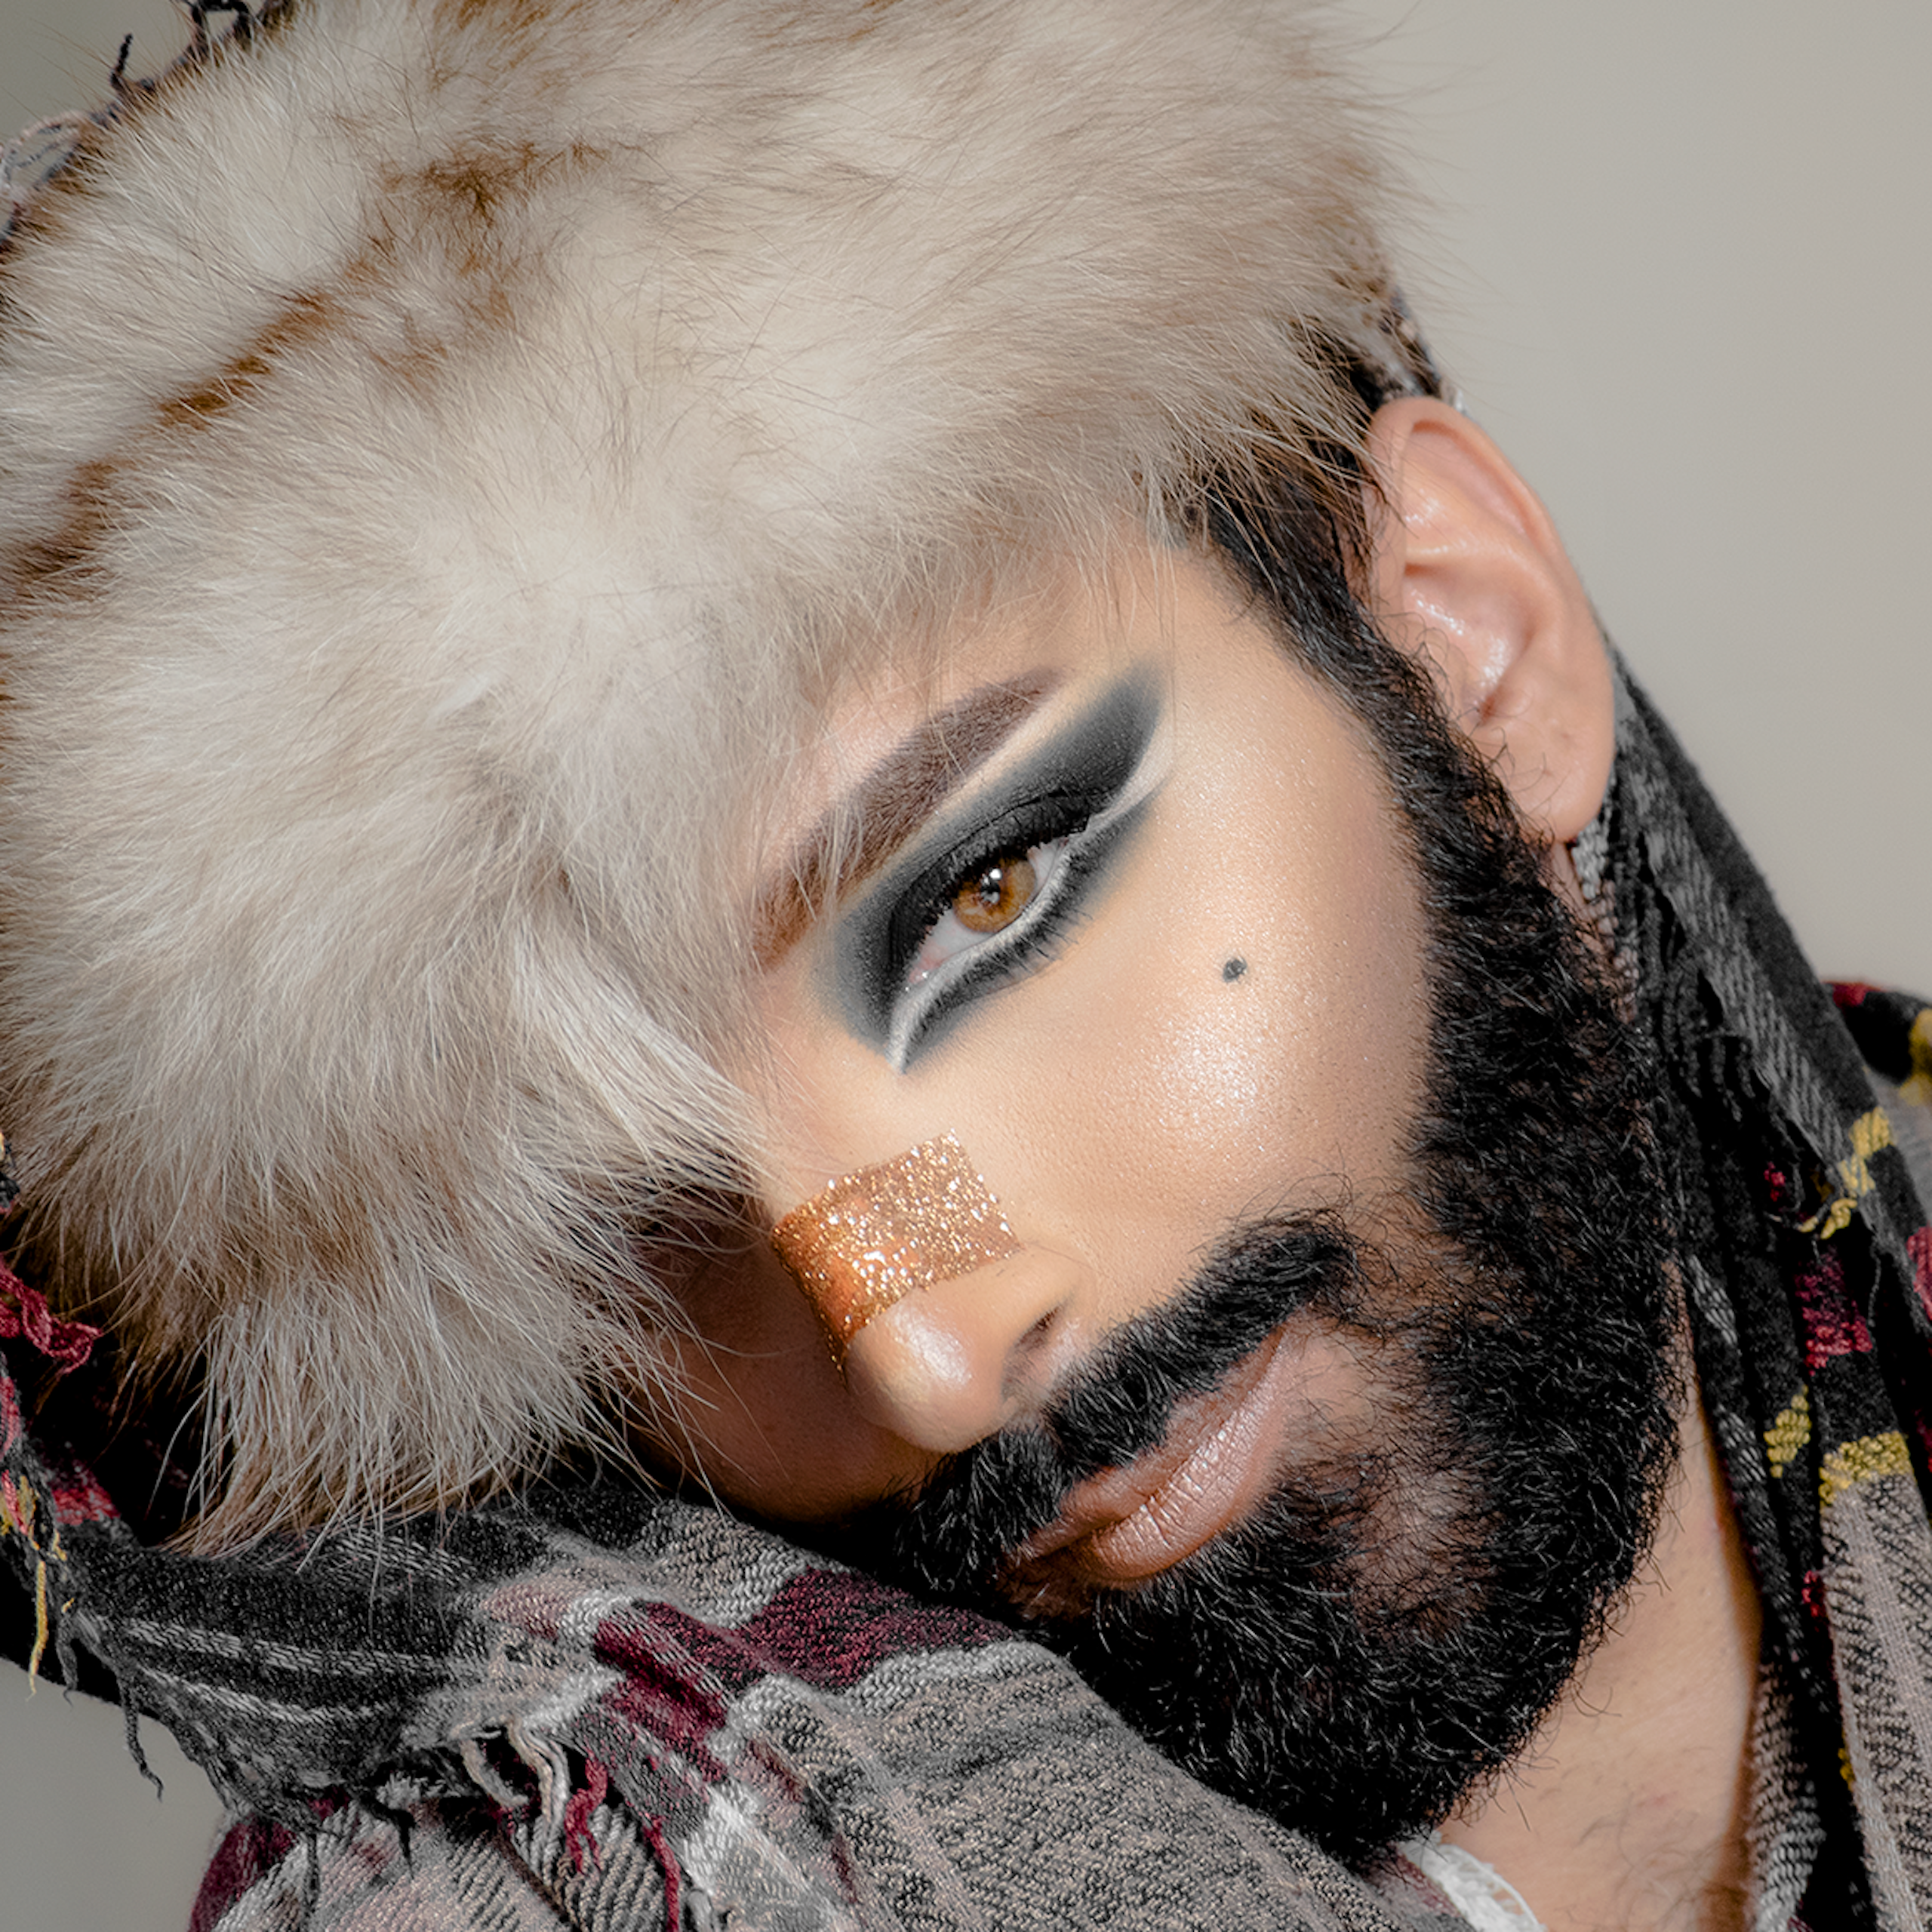 Autoportrait de l'artiste militante LGBT+, féministe et artiste tunisienne Khookha McQueer. 2018